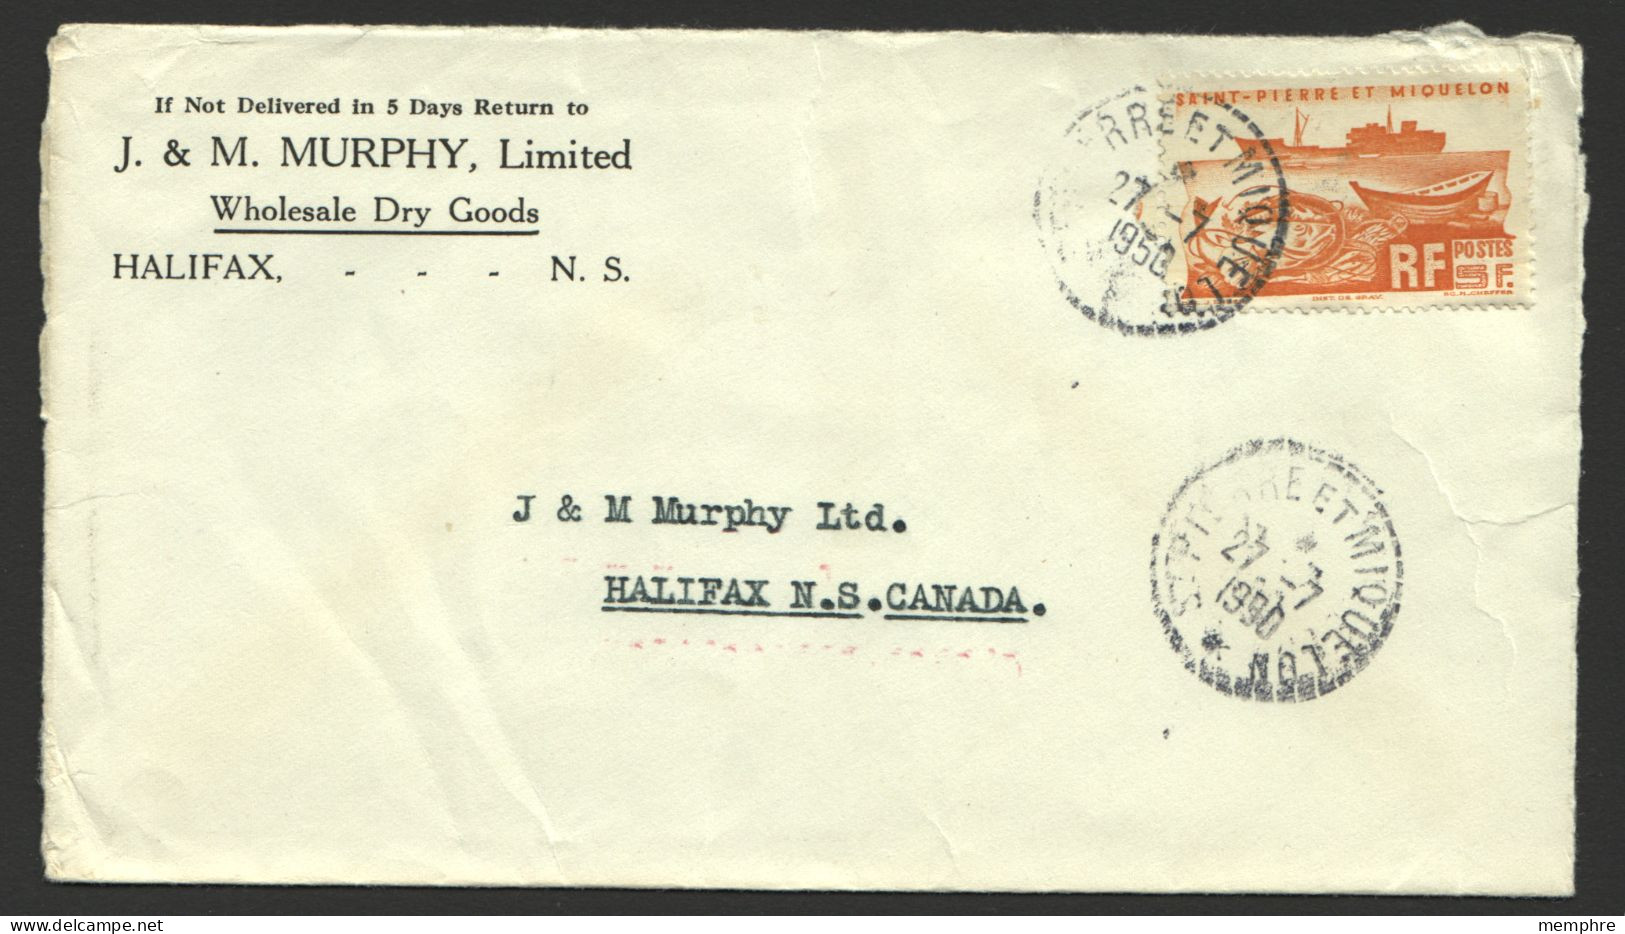 1951 Lettre  Pour Le Canada  Yv 338 Seul - Lettres & Documents